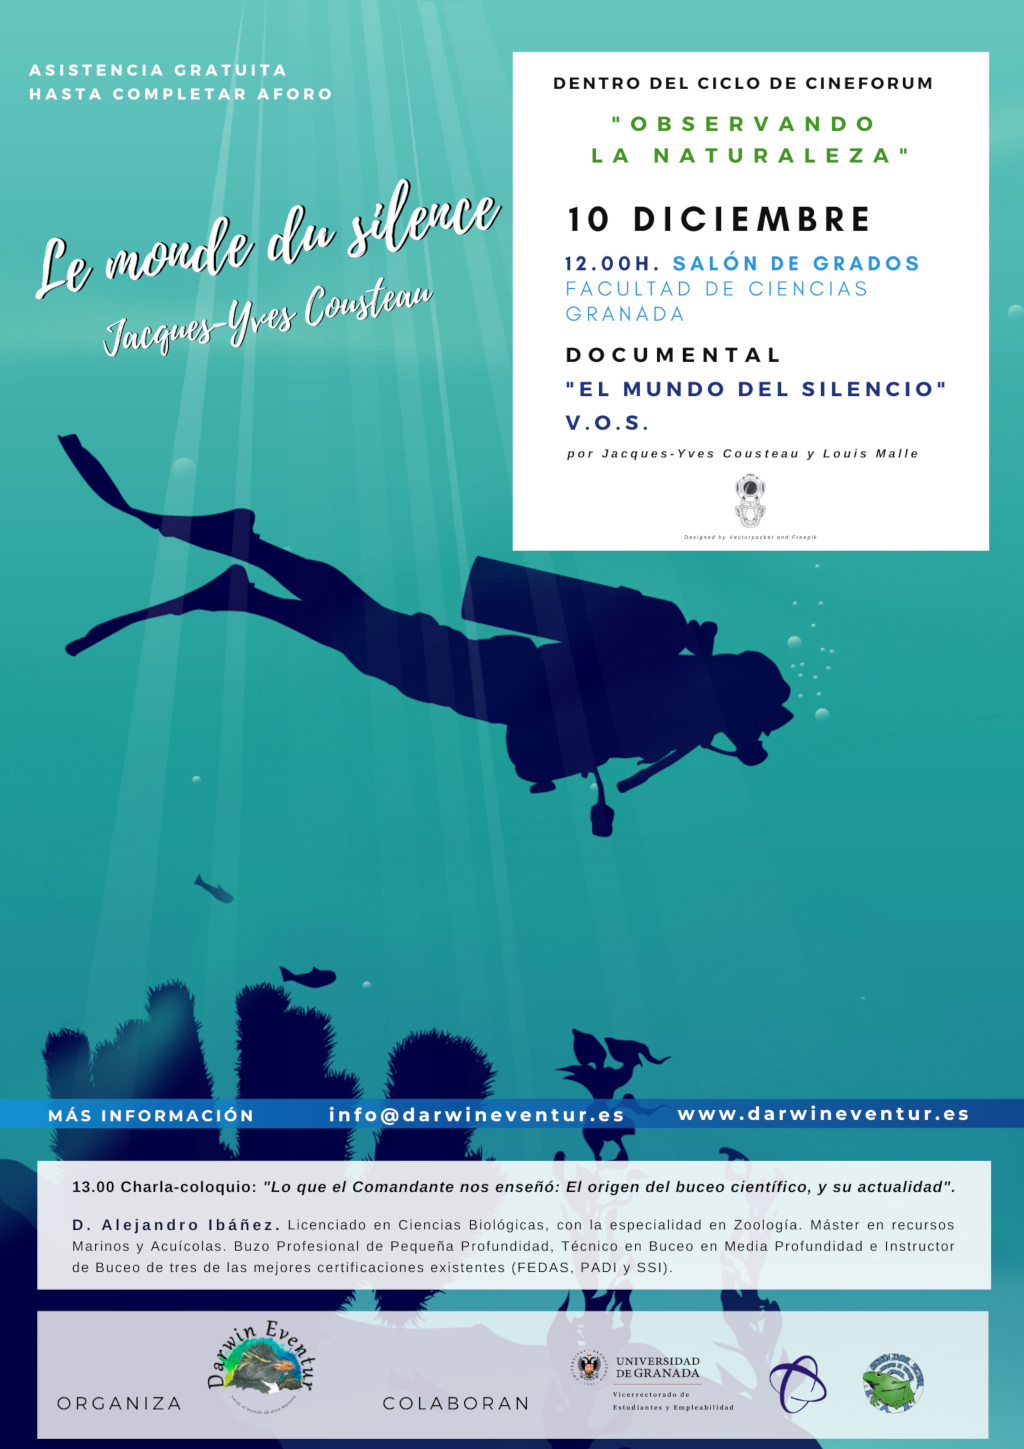 Proyección del documental: El mundo del silencio en V.O.S. de Jacques-Yves Cousteau